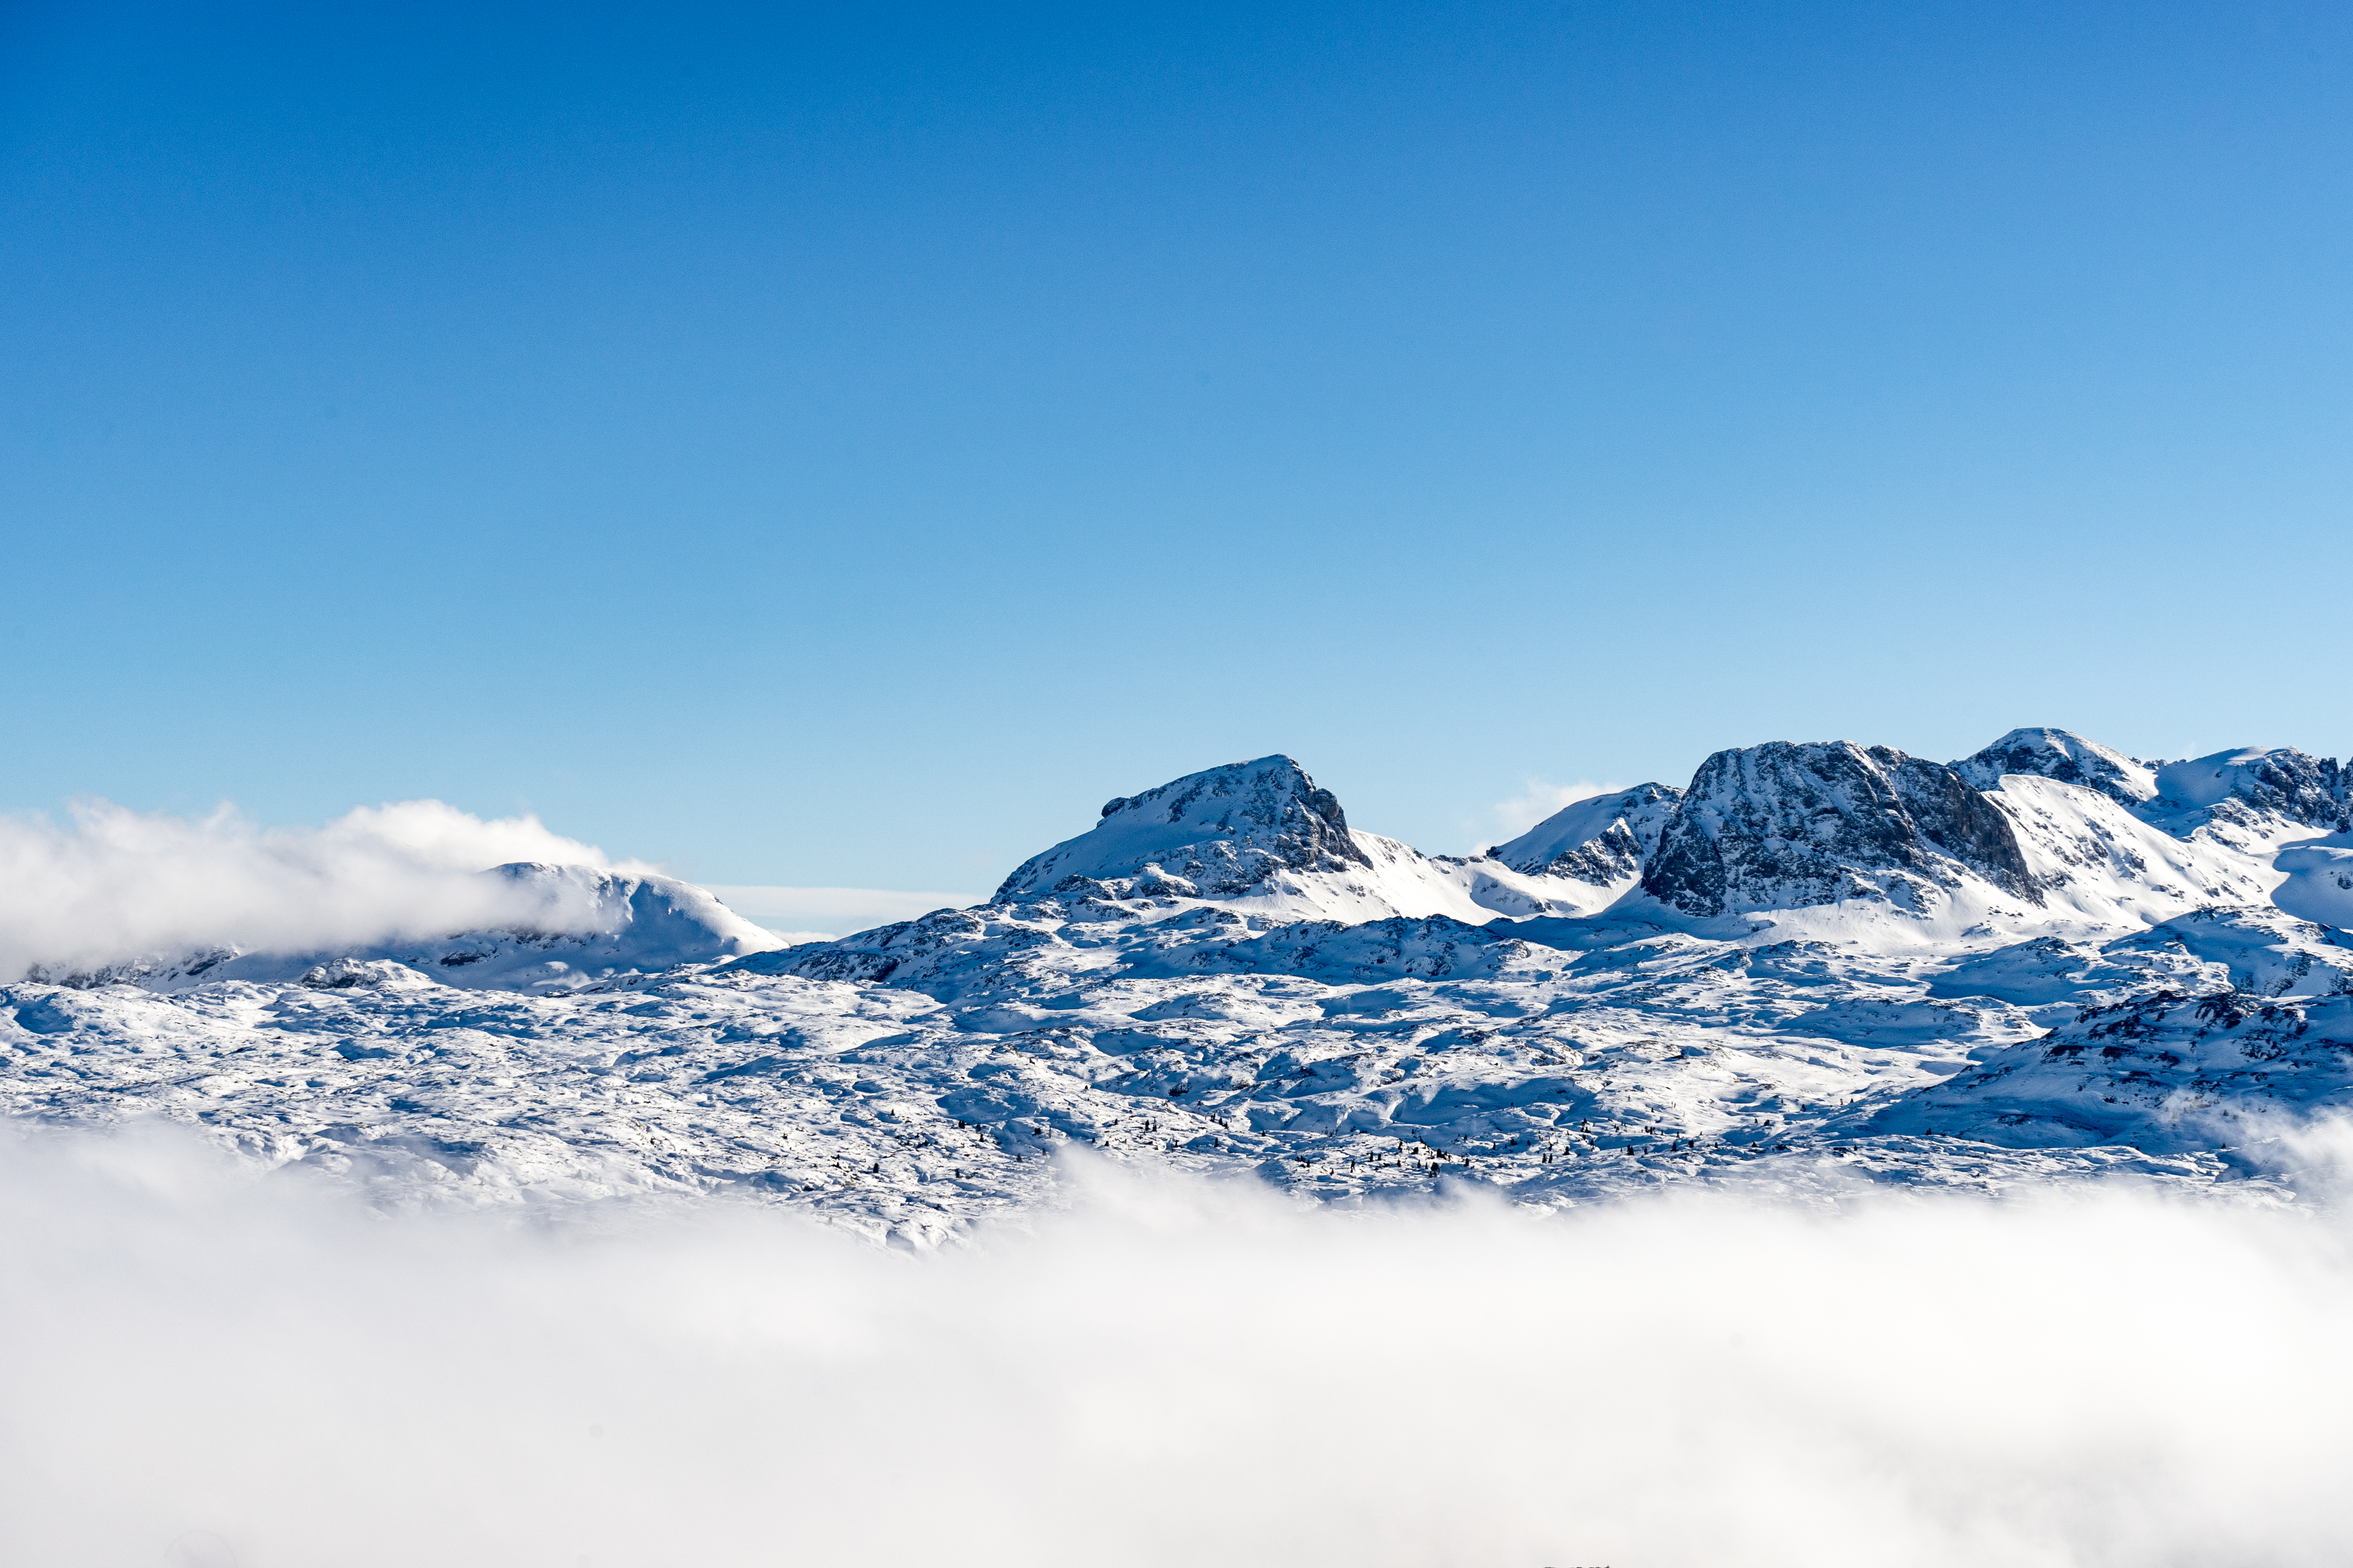 Скачать обои бесплатно Облака, Снег, Природа, Вершины, Горы, Пейзаж картинка на рабочий стол ПК